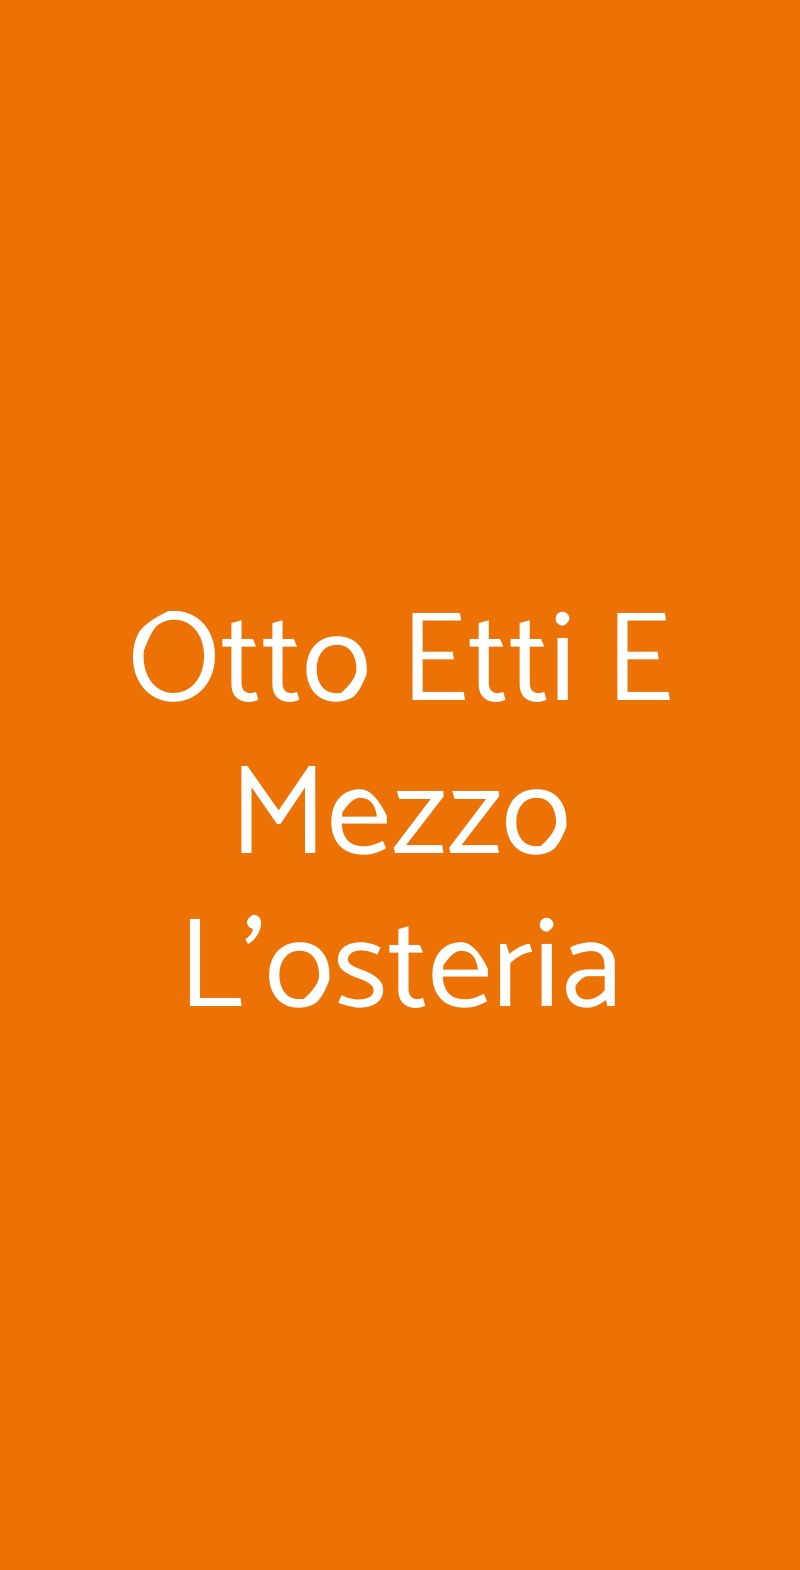 Otto Etti E Mezzo L'osteria Viareggio menù 1 pagina